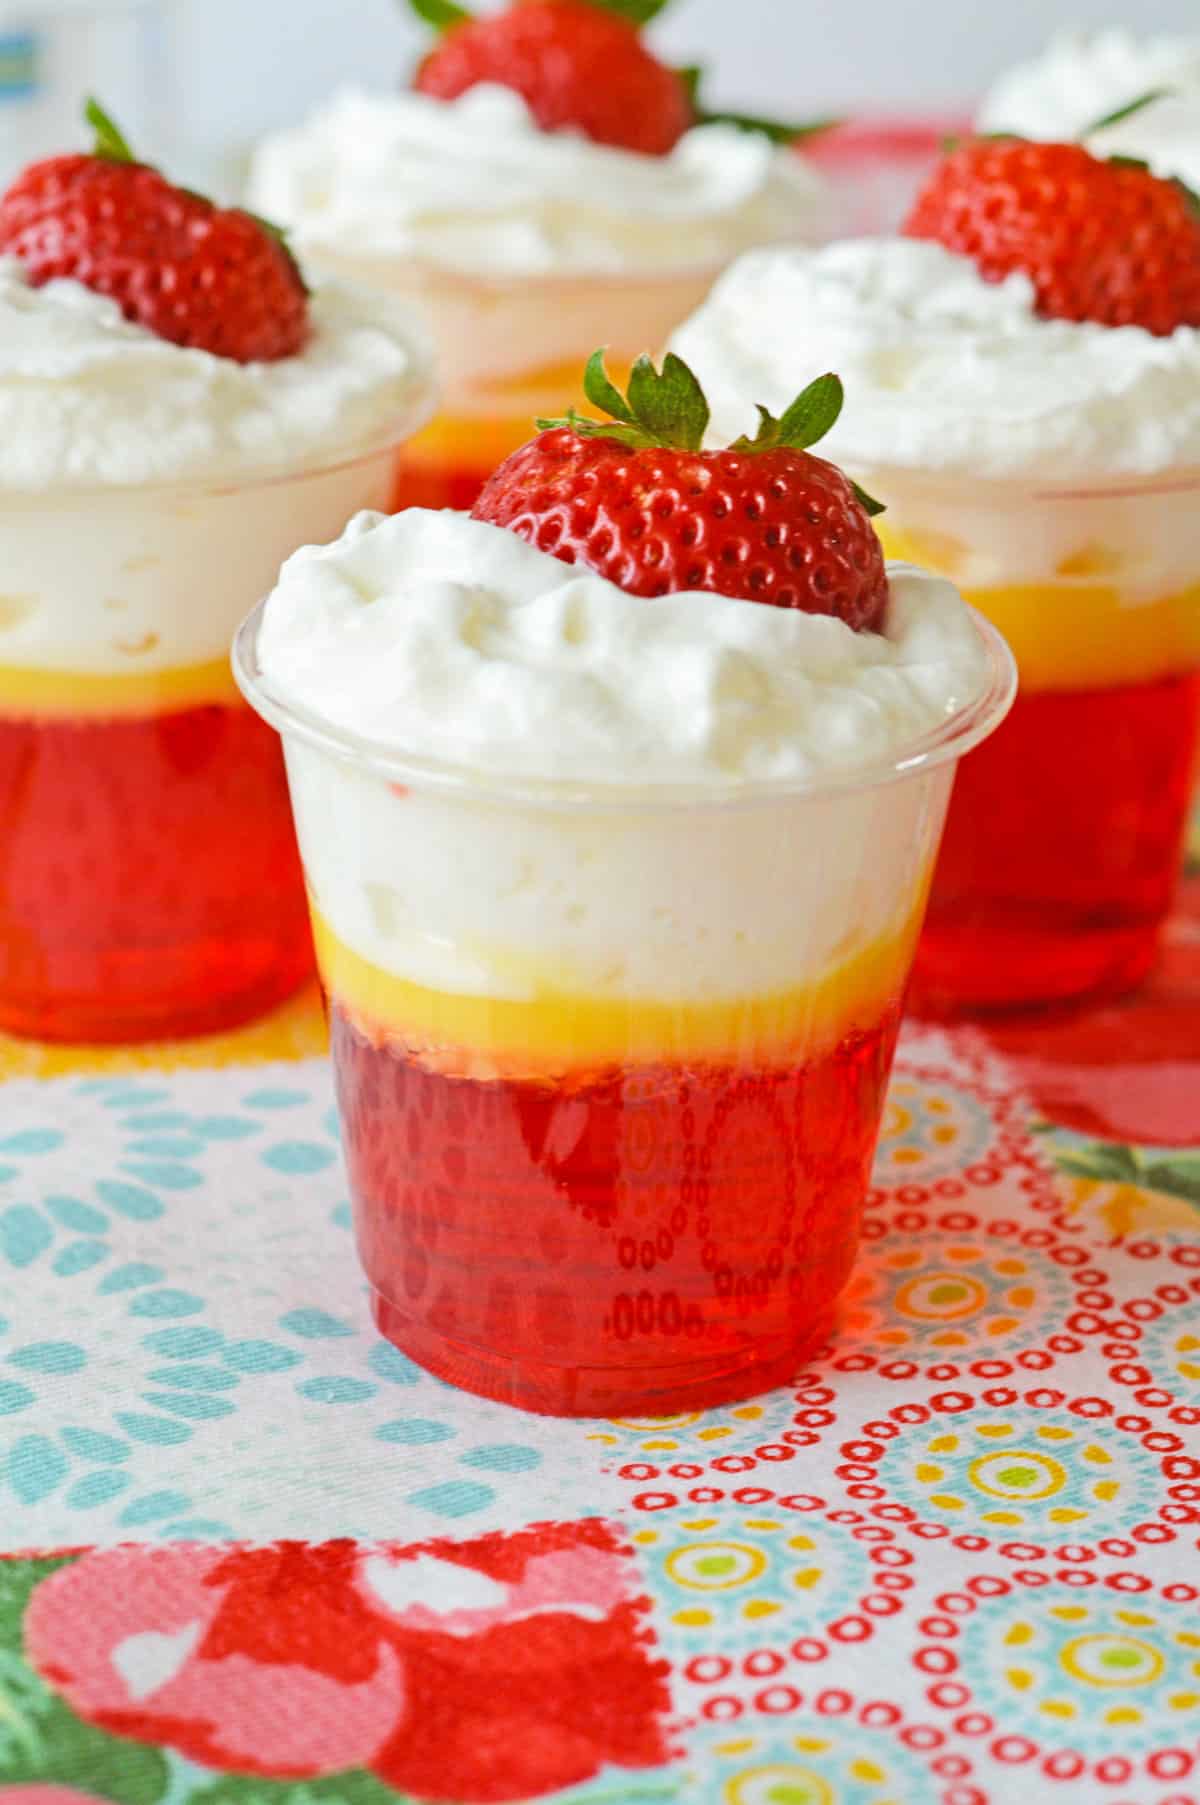 Strawberries and cream jello shots with 3 distinct layers: Strawberry jello, vanilla pudding, and whipped cream and topped with a fresh strawberry.